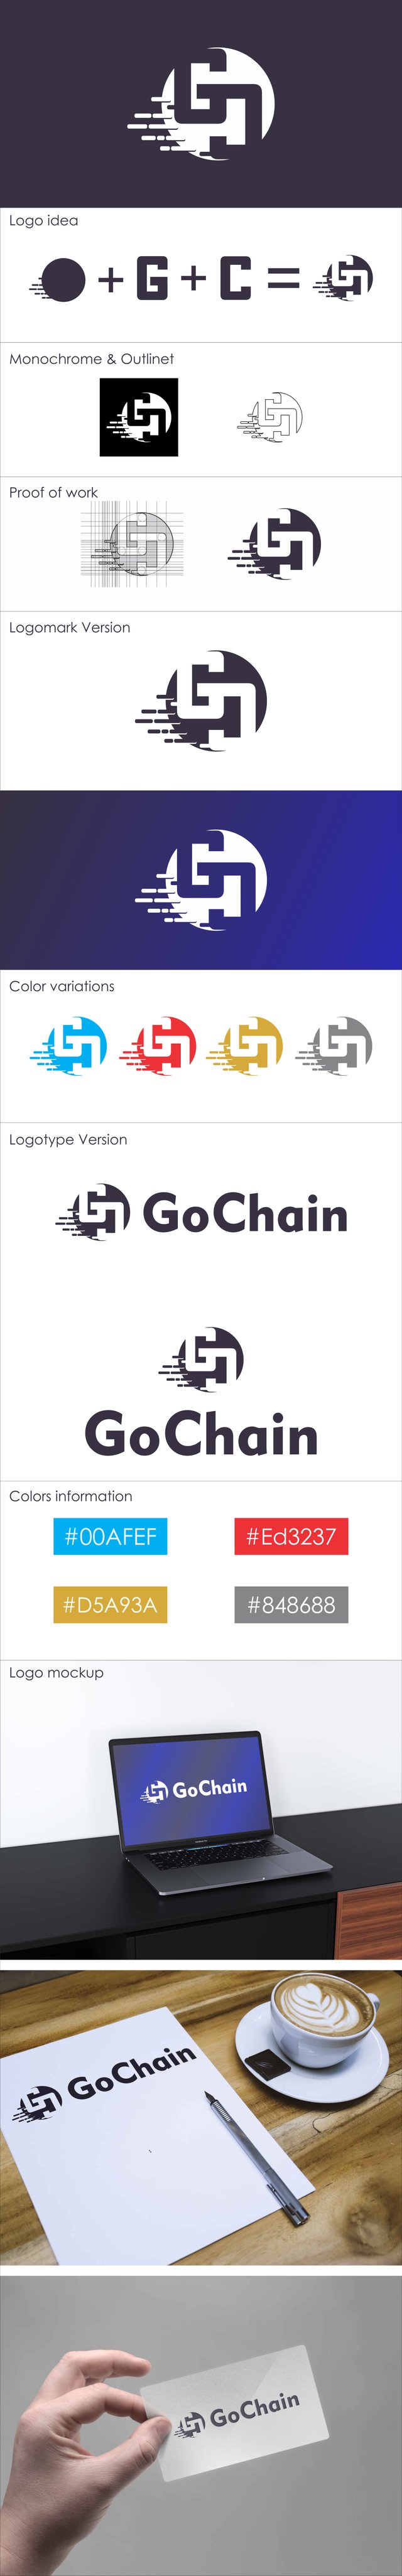 logo go chain full varsion.jpg